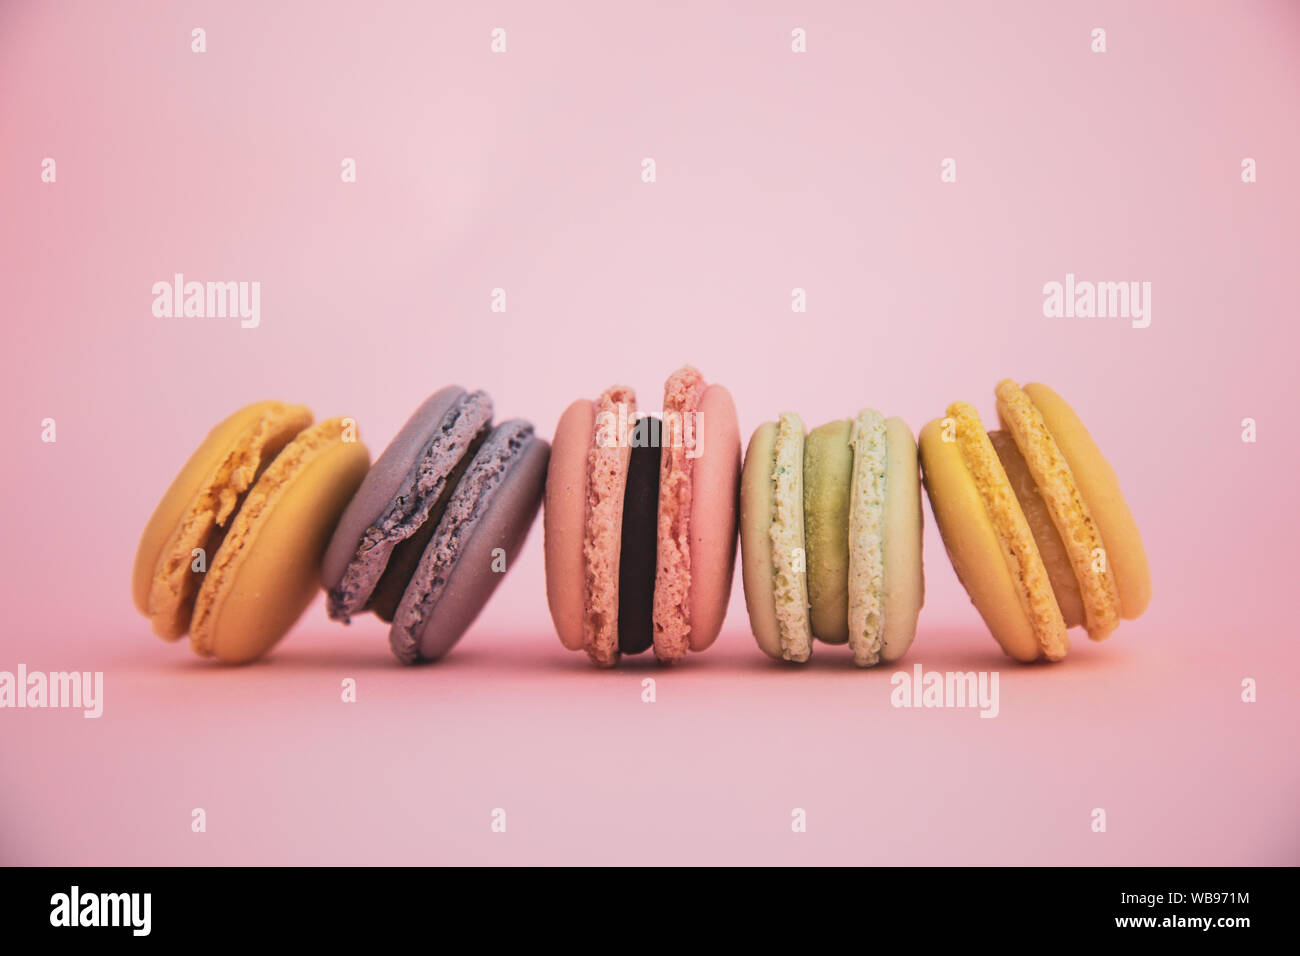 Lineup d'un assortiment de macarons français sur fond rose Banque D'Images